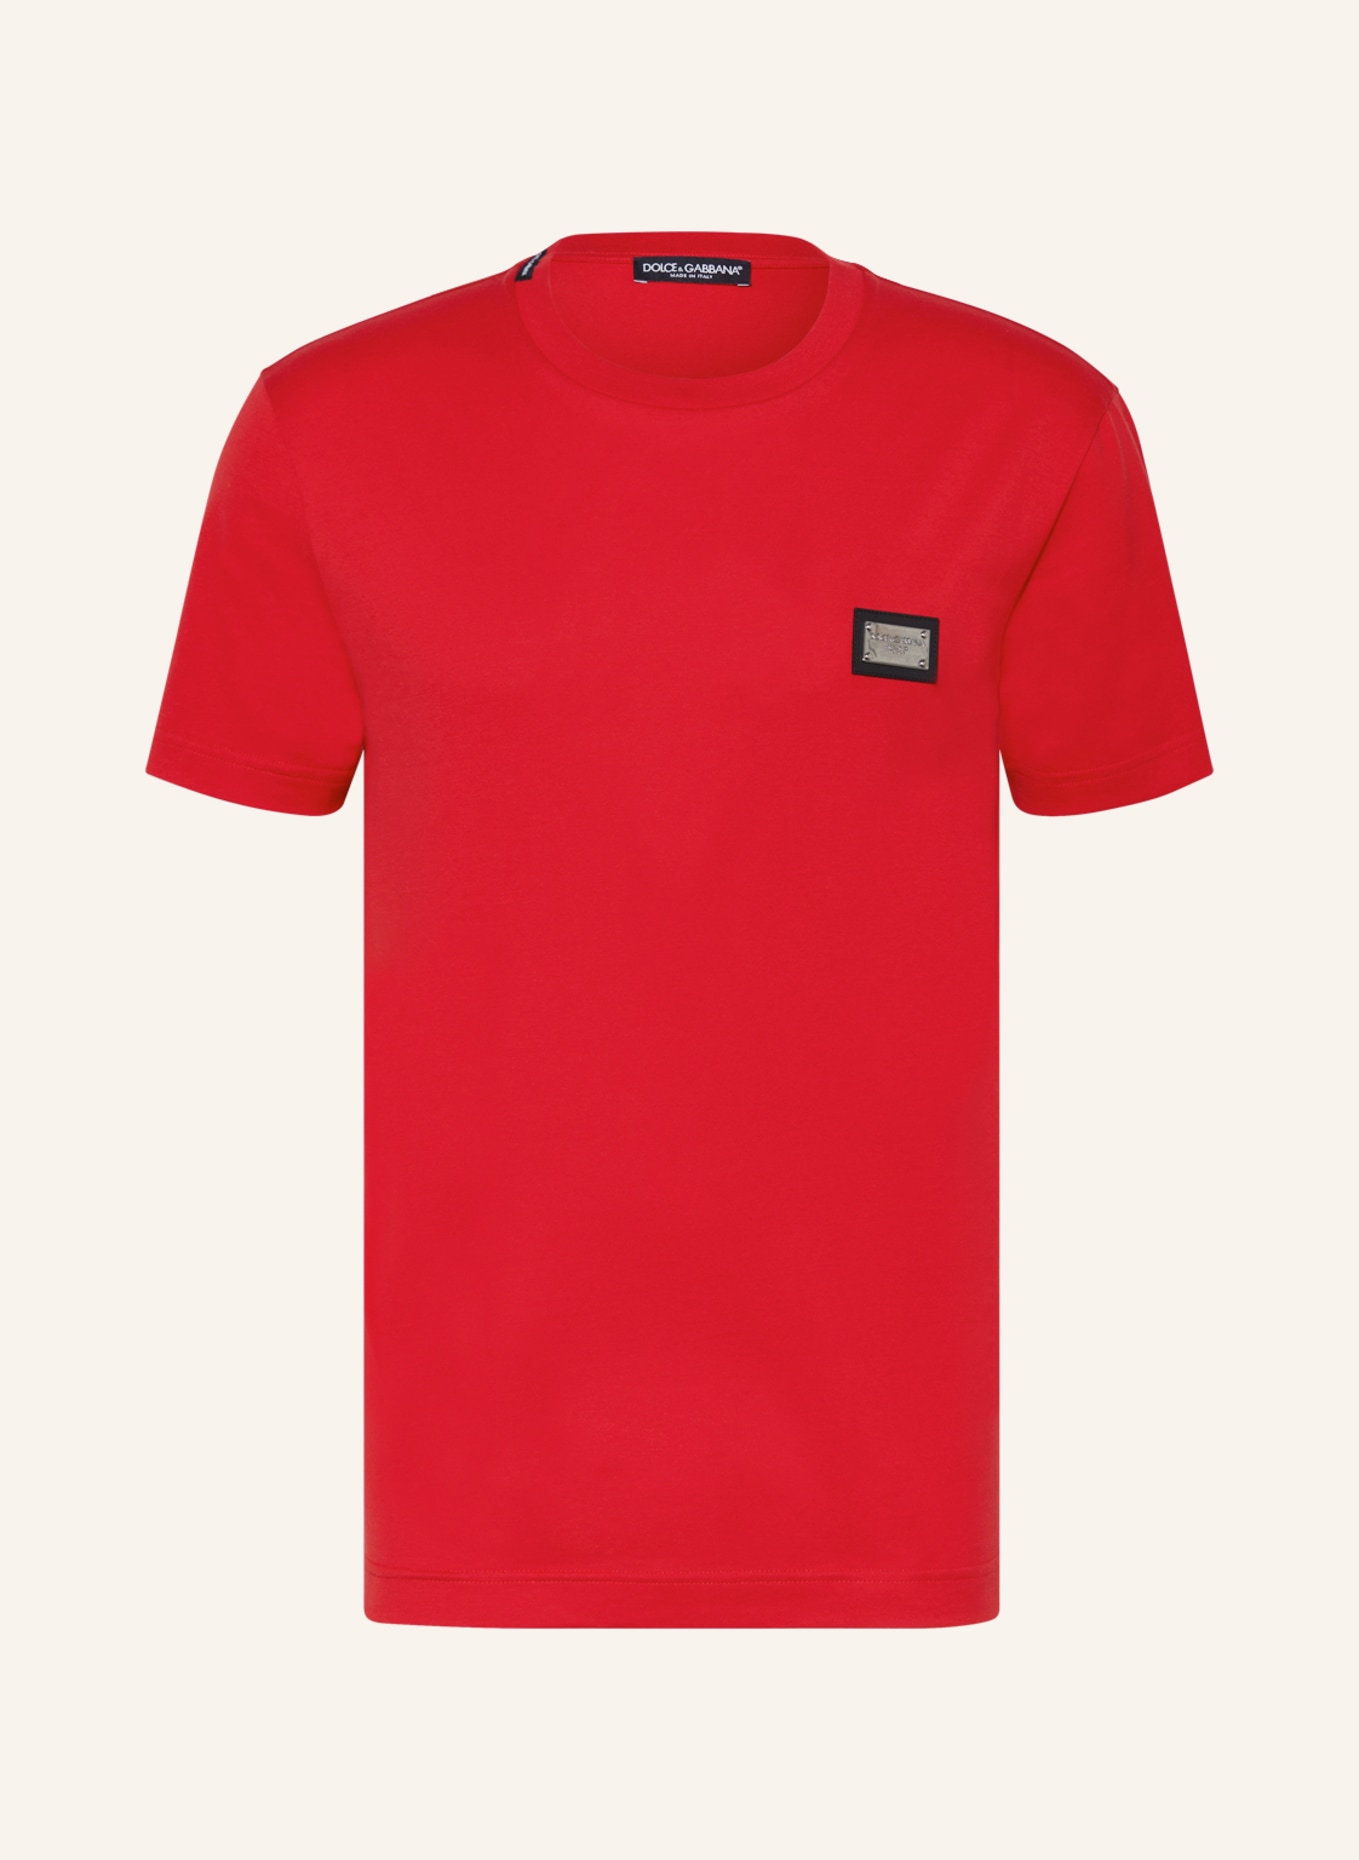 DOLCE & GABBANA T-Shirt, Farbe: ROT (Bild 1)